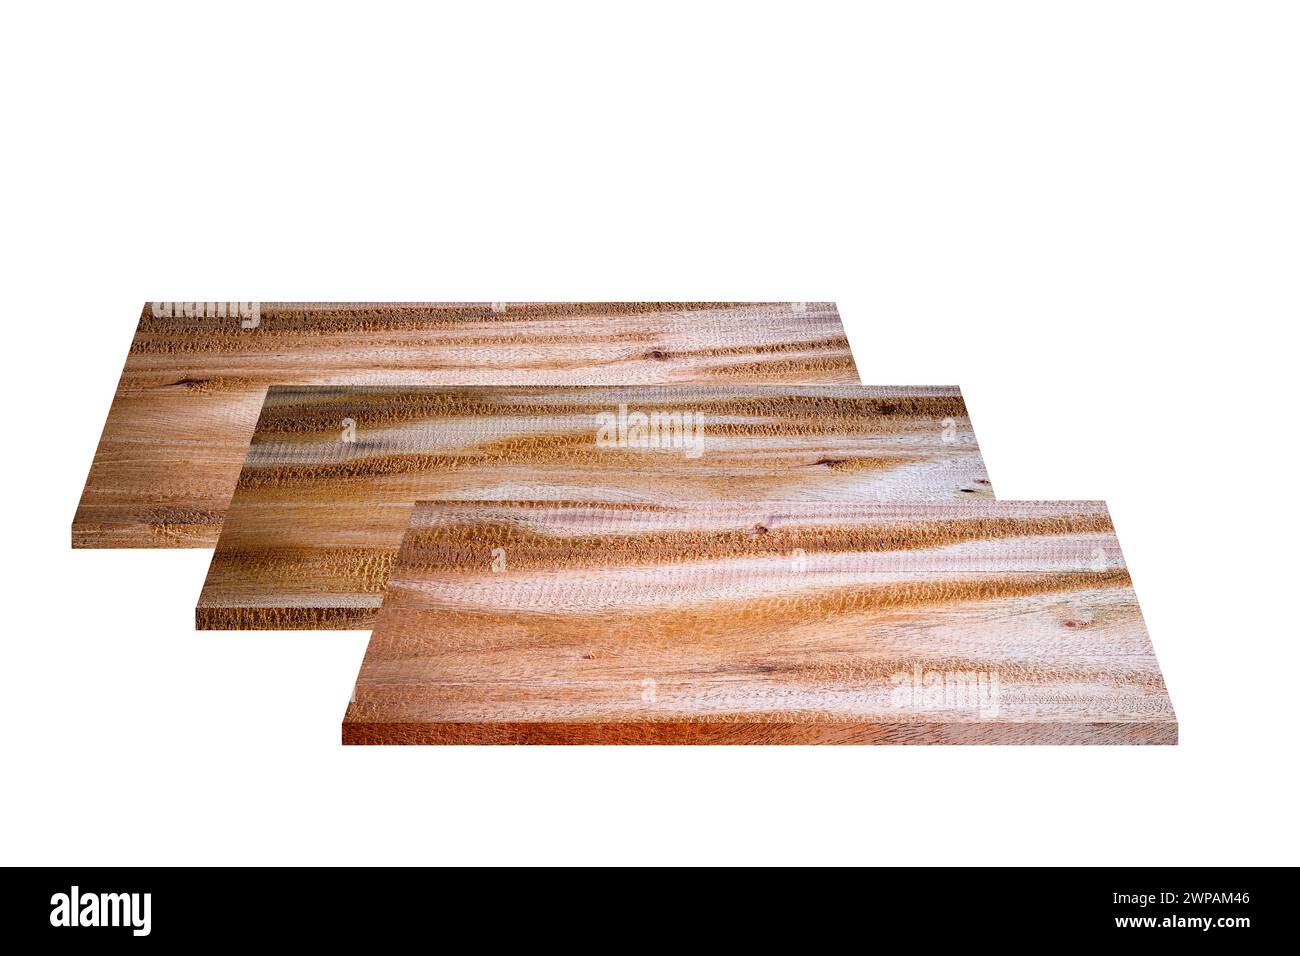 Materiale della tavola di legno vuoto impilato su forma quadrata per l'uso per realizzare mobili, edifici o decorare interni ed esterni, isolato su un dorso bianco Foto Stock